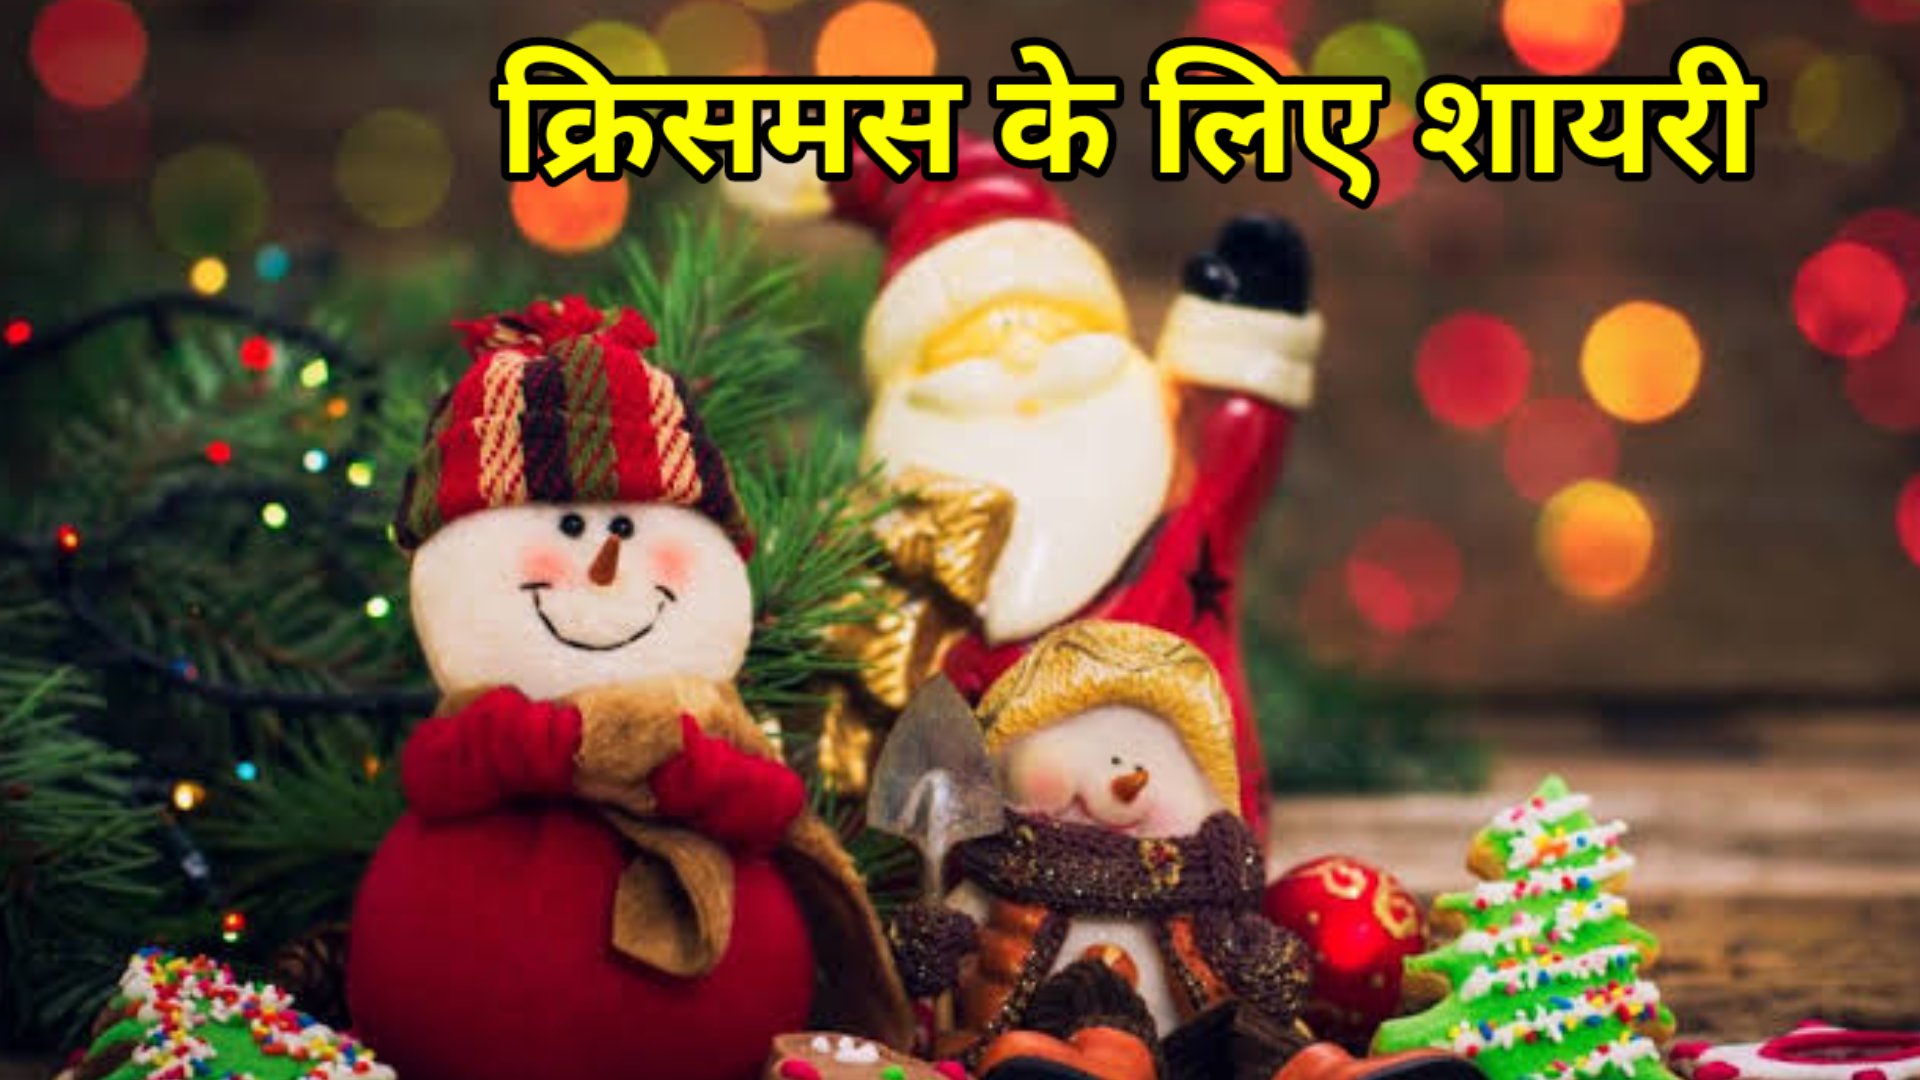 Happy Christmas Shayari in Hindi